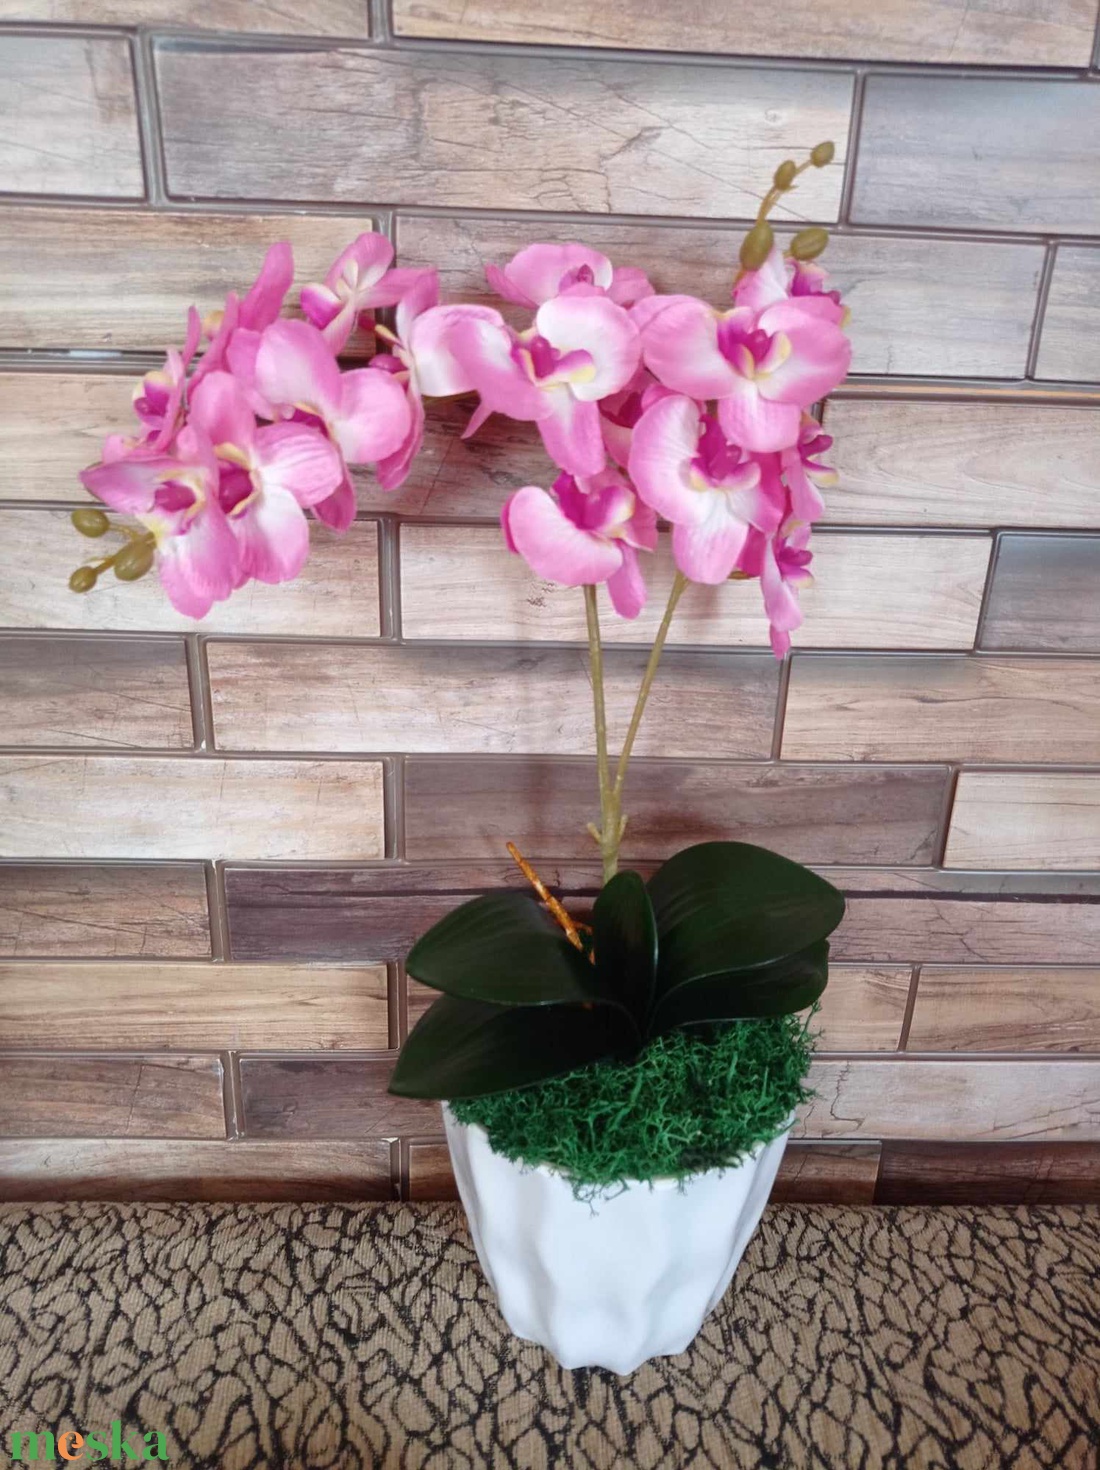 Rózsaszín orchidea selyemvirág műanyag kaspóban asztaldísz tavaszi dekoráció műnövény - otthon & lakás - dekoráció - virágdísz és tartó - csokor & virágdísz - Meska.hu